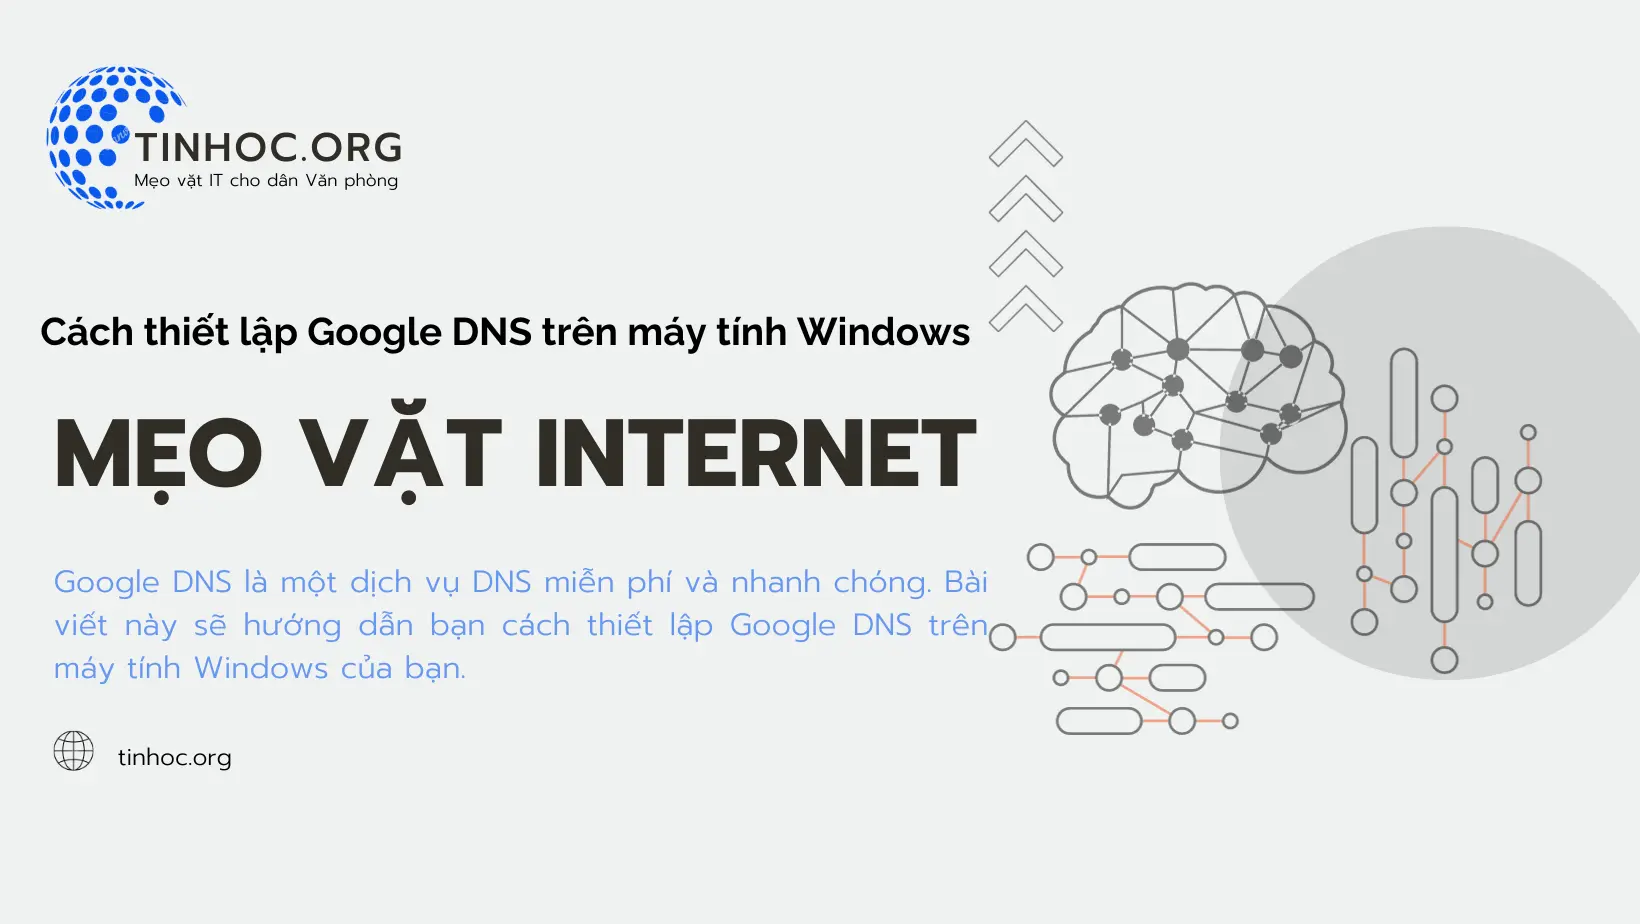 Google DNS là một dịch vụ DNS miễn phí và nhanh chóng. Bài viết này sẽ hướng dẫn bạn cách thiết lập Google DNS trên máy tính Windows của bạn.